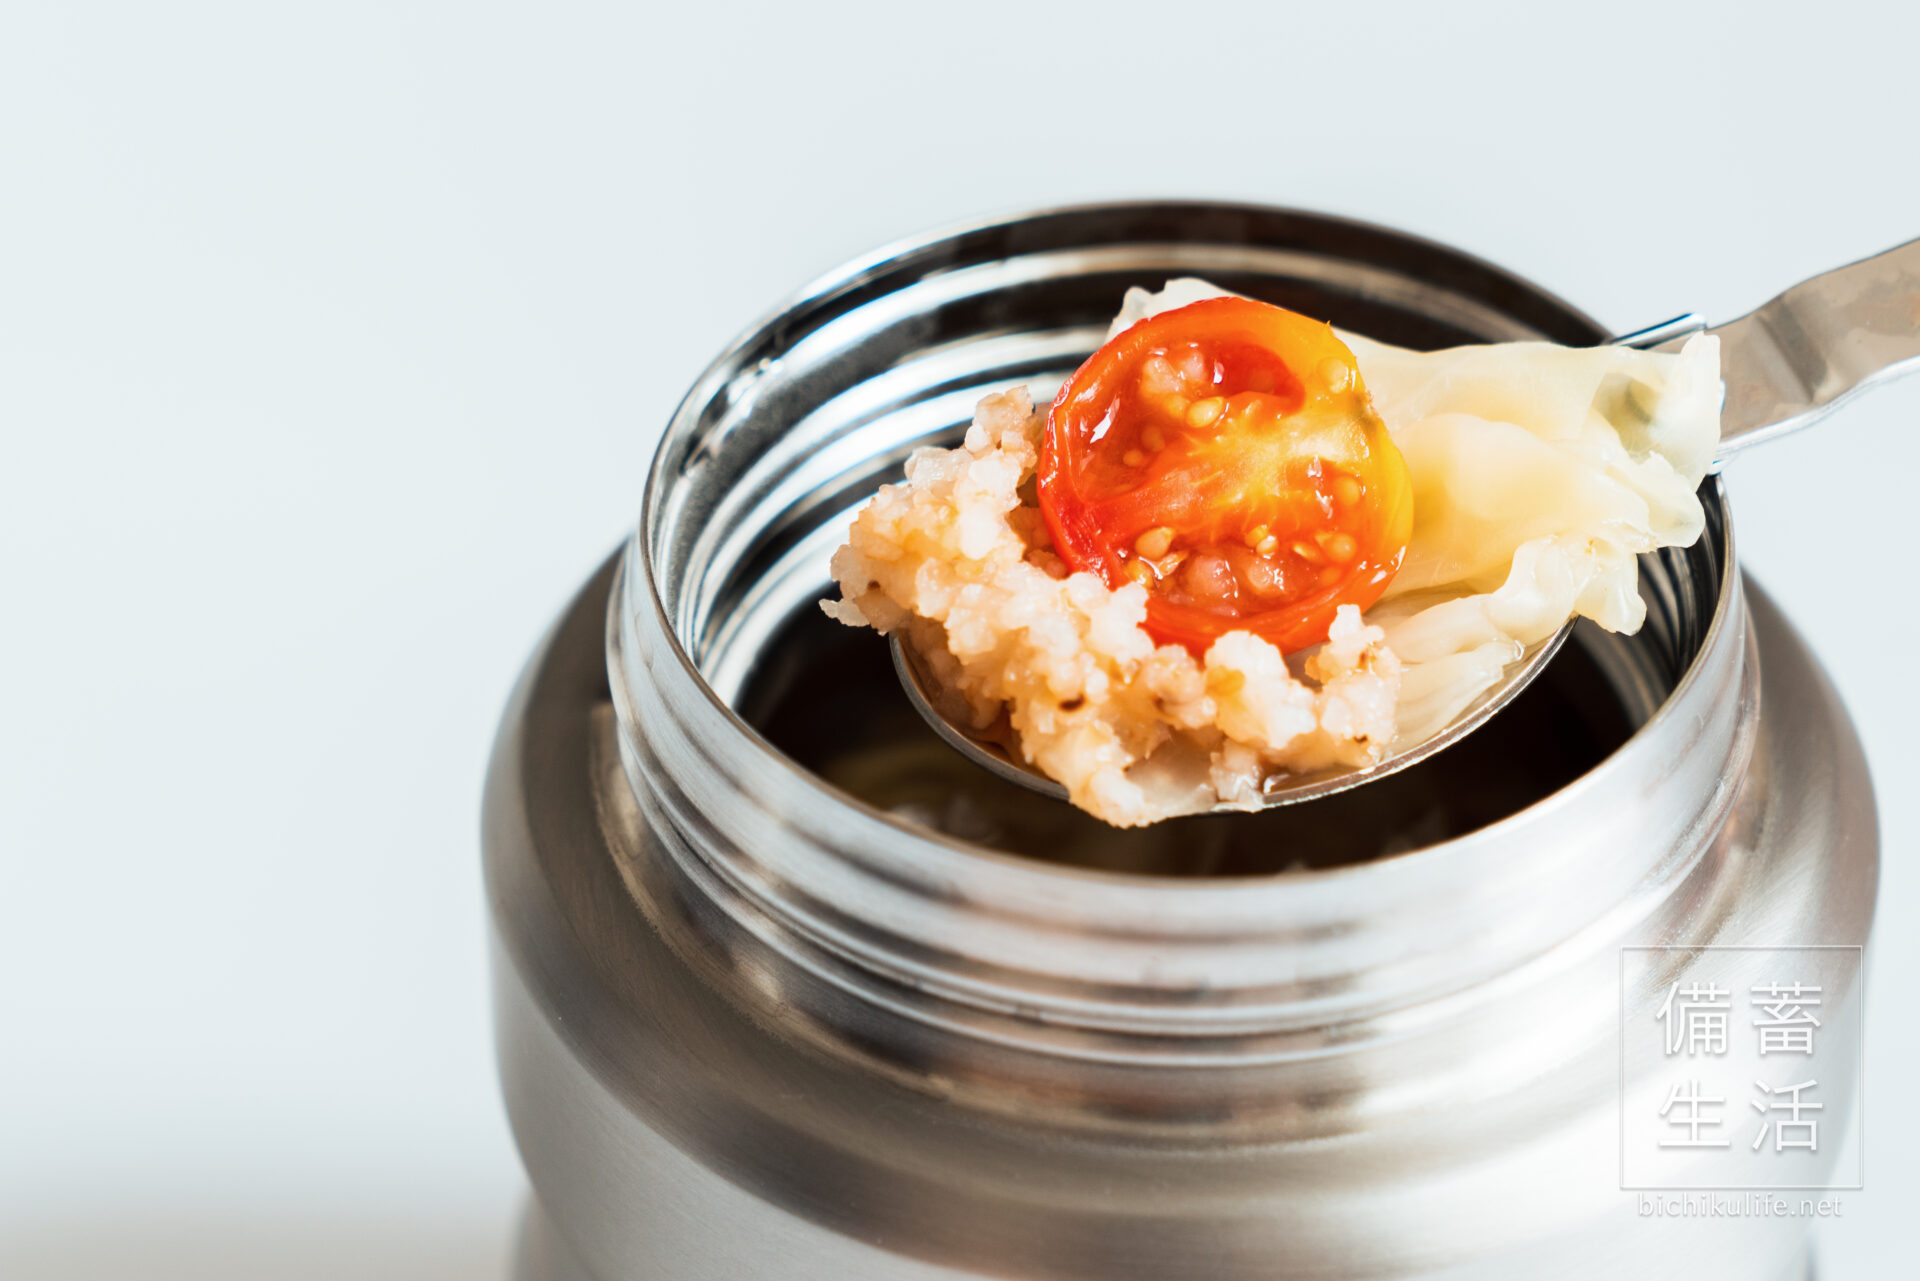 【ドライトマトと野菜コンソメ】炒り玄米スープごはんの作り方・レシピ